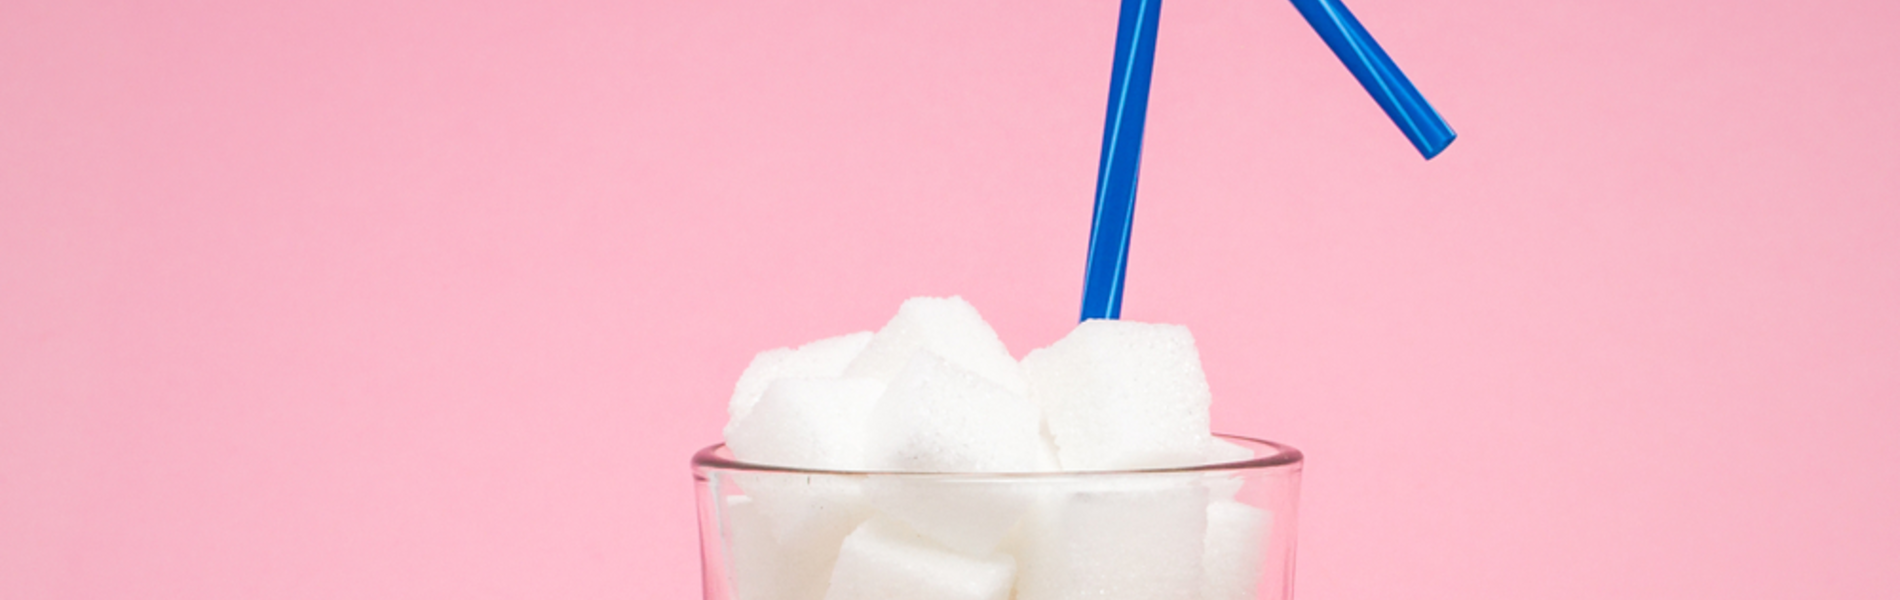 פתיתים, סושי או שוקו: איפה יש יותר סוכר?